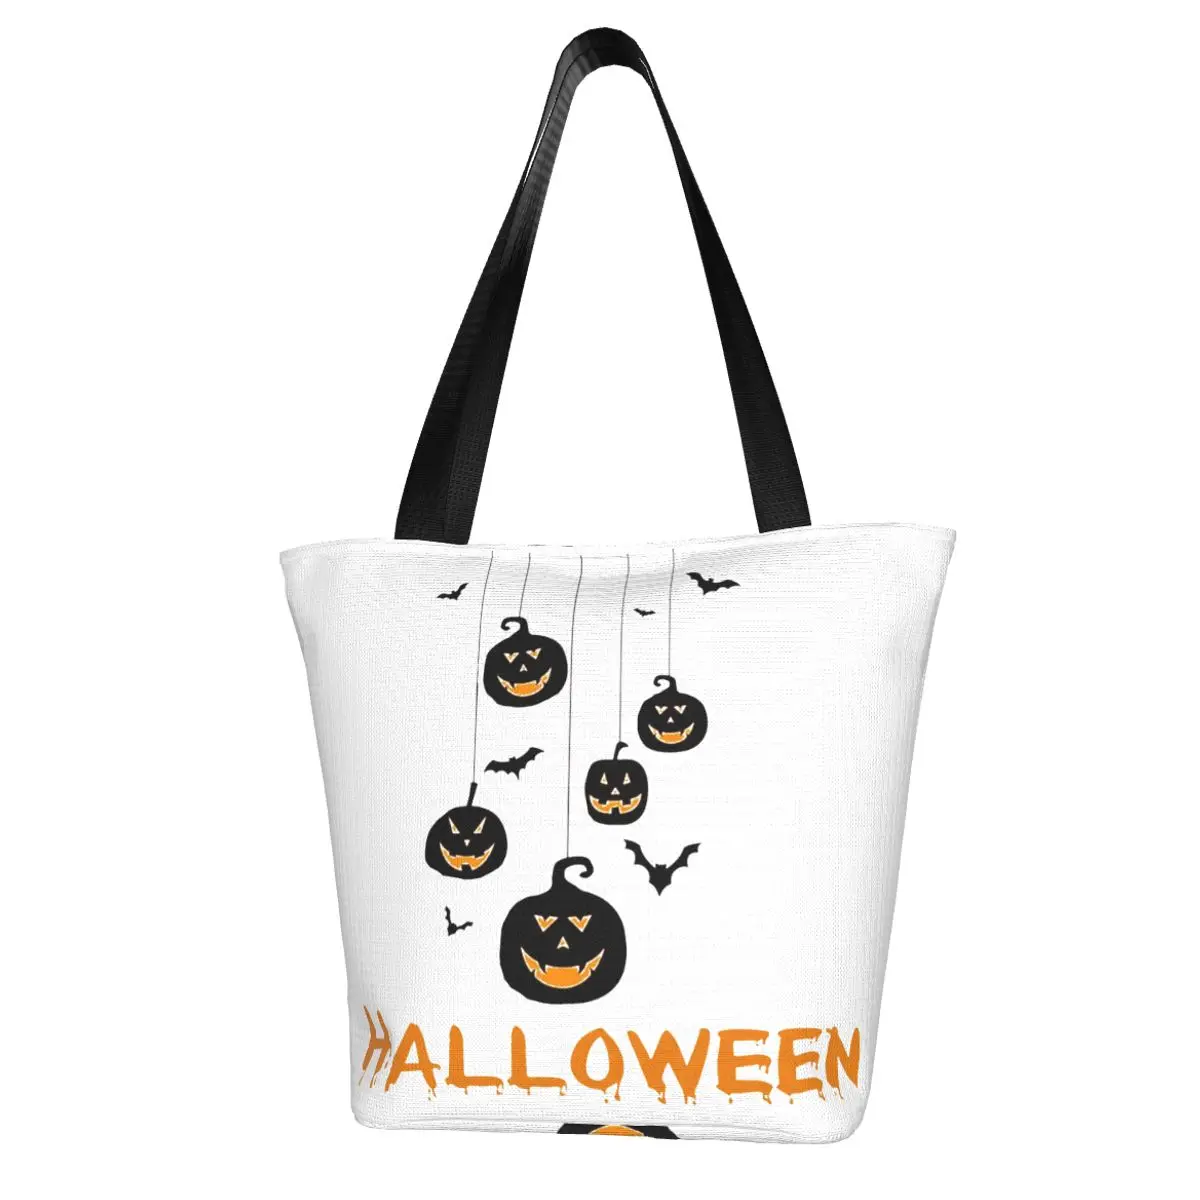 

Хэллоуин тыква летучая мышь хозяйственная сумка Смешные модные многоразовые сумки полиэстер школьные женские сумки